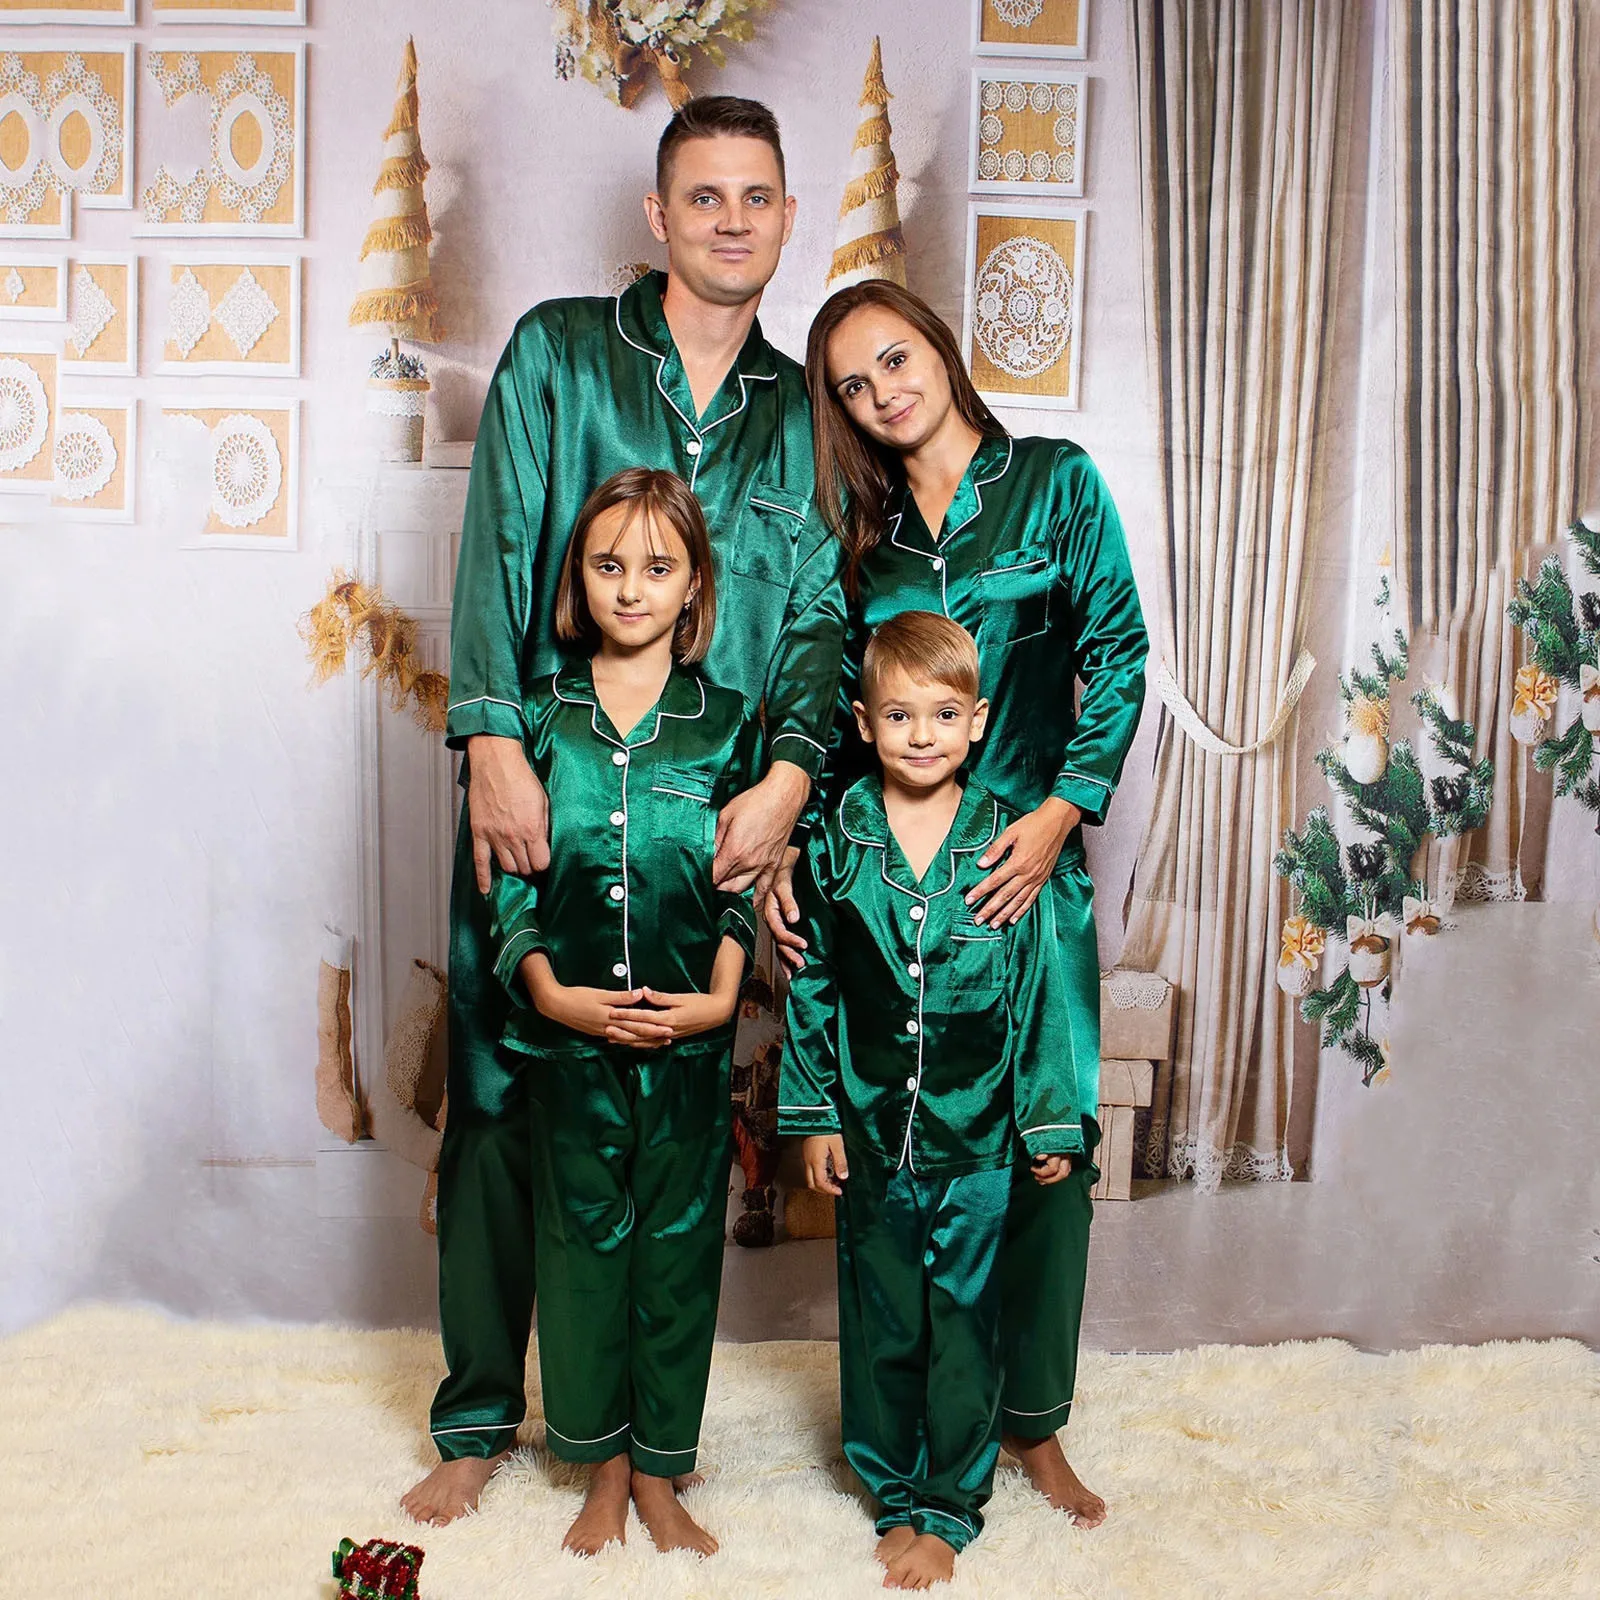 Venda Natal pijama família correspondência de vestuário roupa de conjunto  de mulheres, homens, crianças, crianças romper do bebê do mom pai casais  xadrez de natal pjs cinza > Loja 